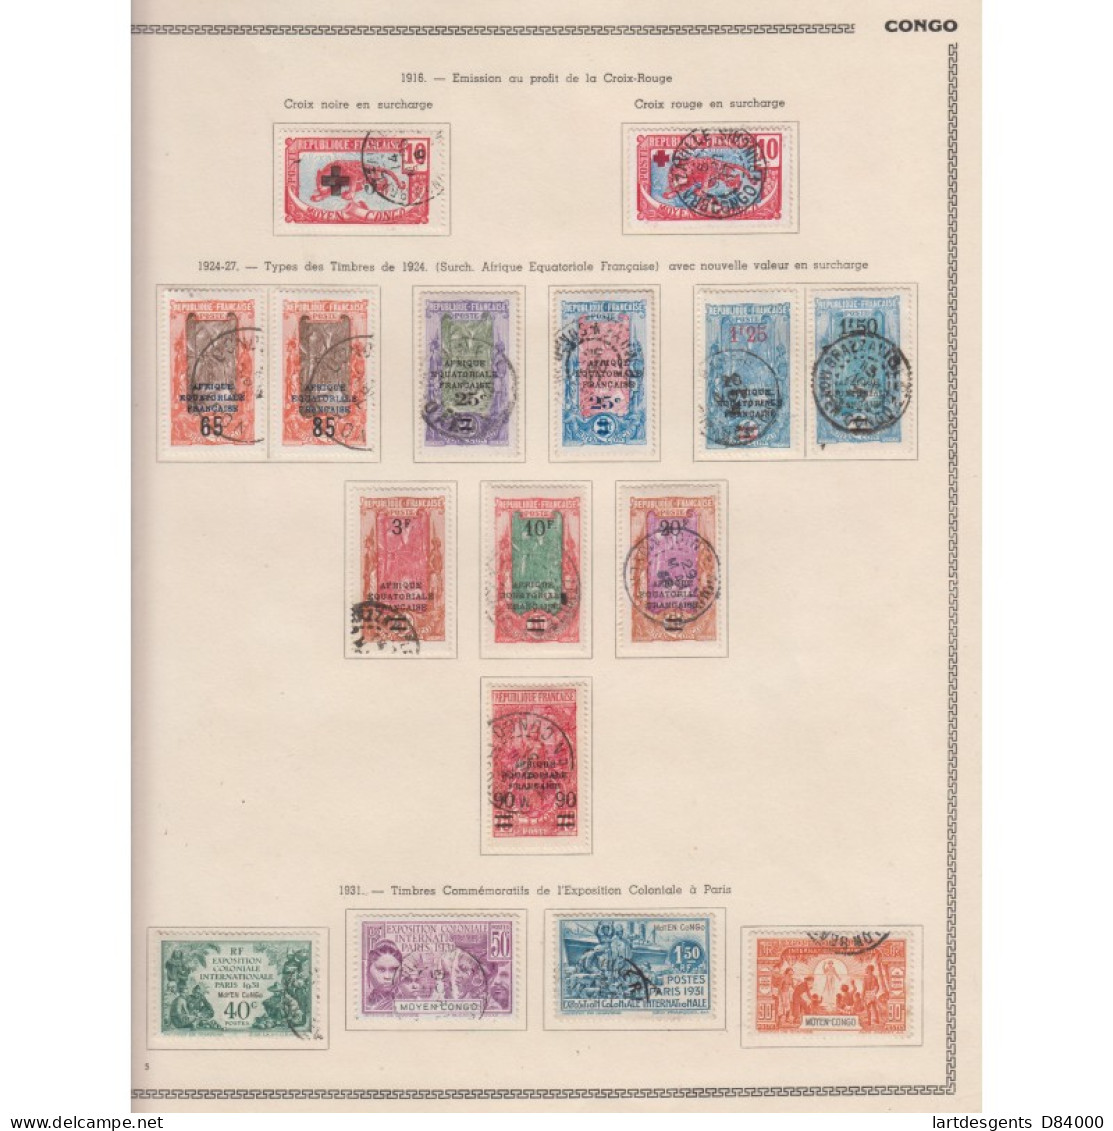 Moyen Congo Colonie Française - 16 Timbres Avec Oblitérations 1916 à 1931, Lartdesgents.fr - Lettres & Documents